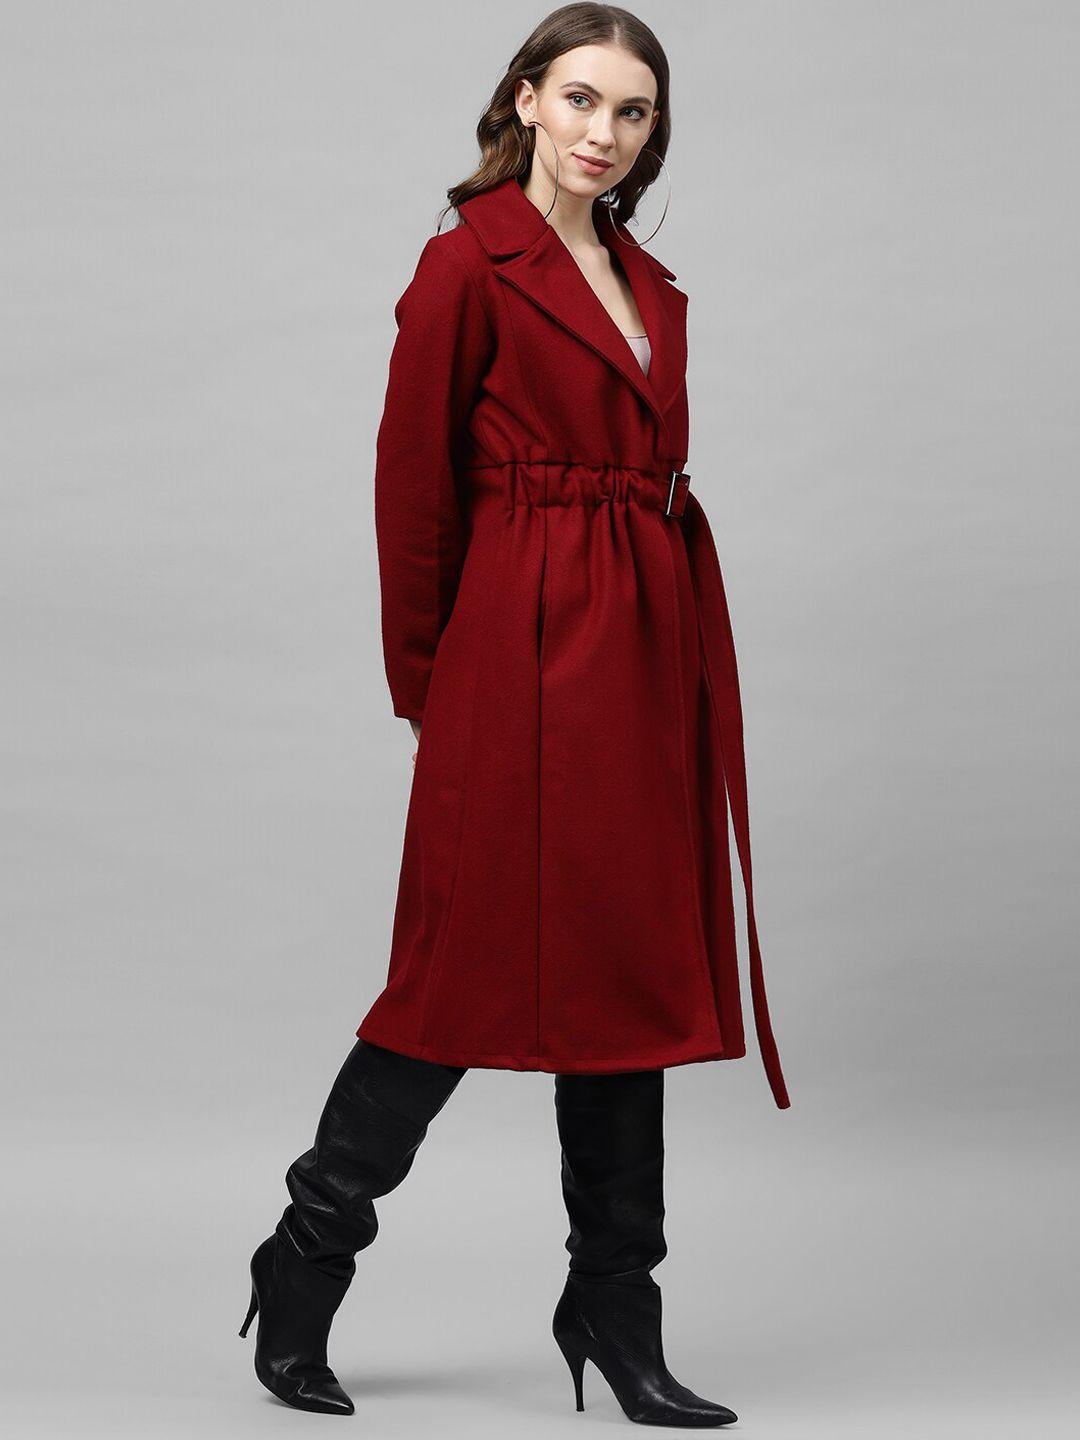 athena-women-maroon-solid-woolen-longline-overcoat